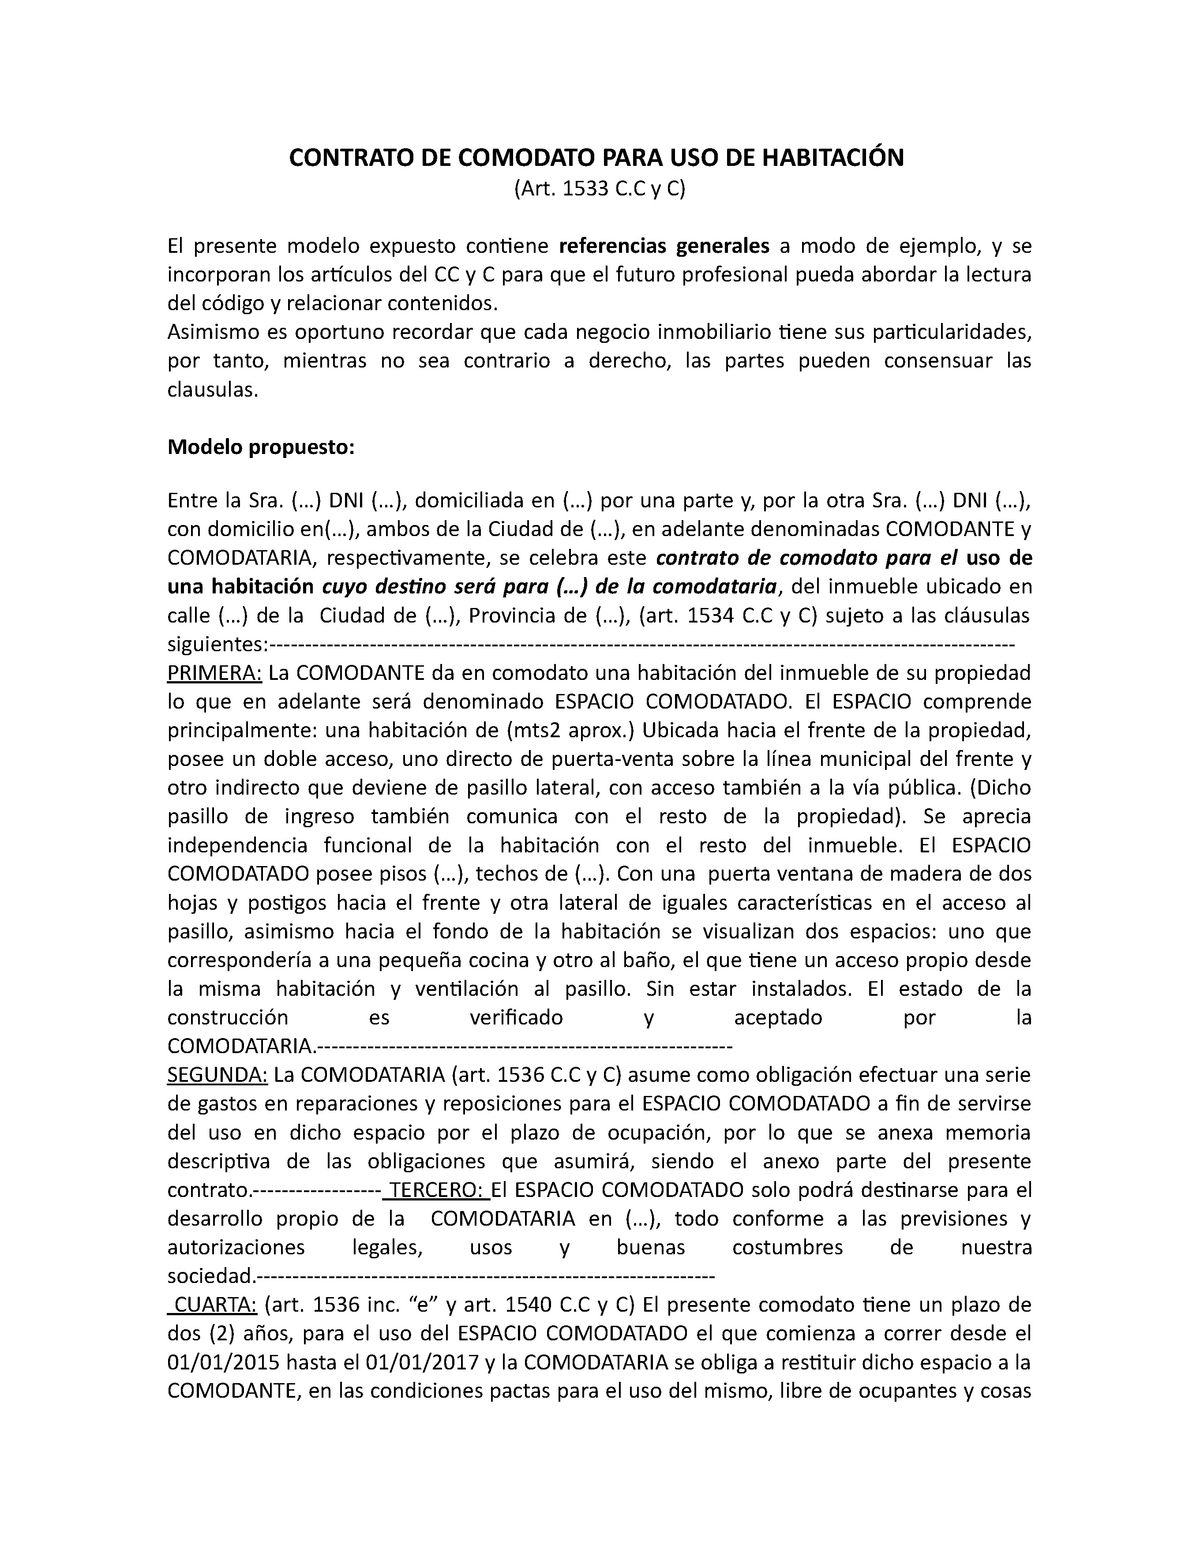 Anexo Contrato Comodato - CONTRATO DE COMODATO PARA USO DE HABITACIÓN (Art.  1533 C y C) El presente - Studocu